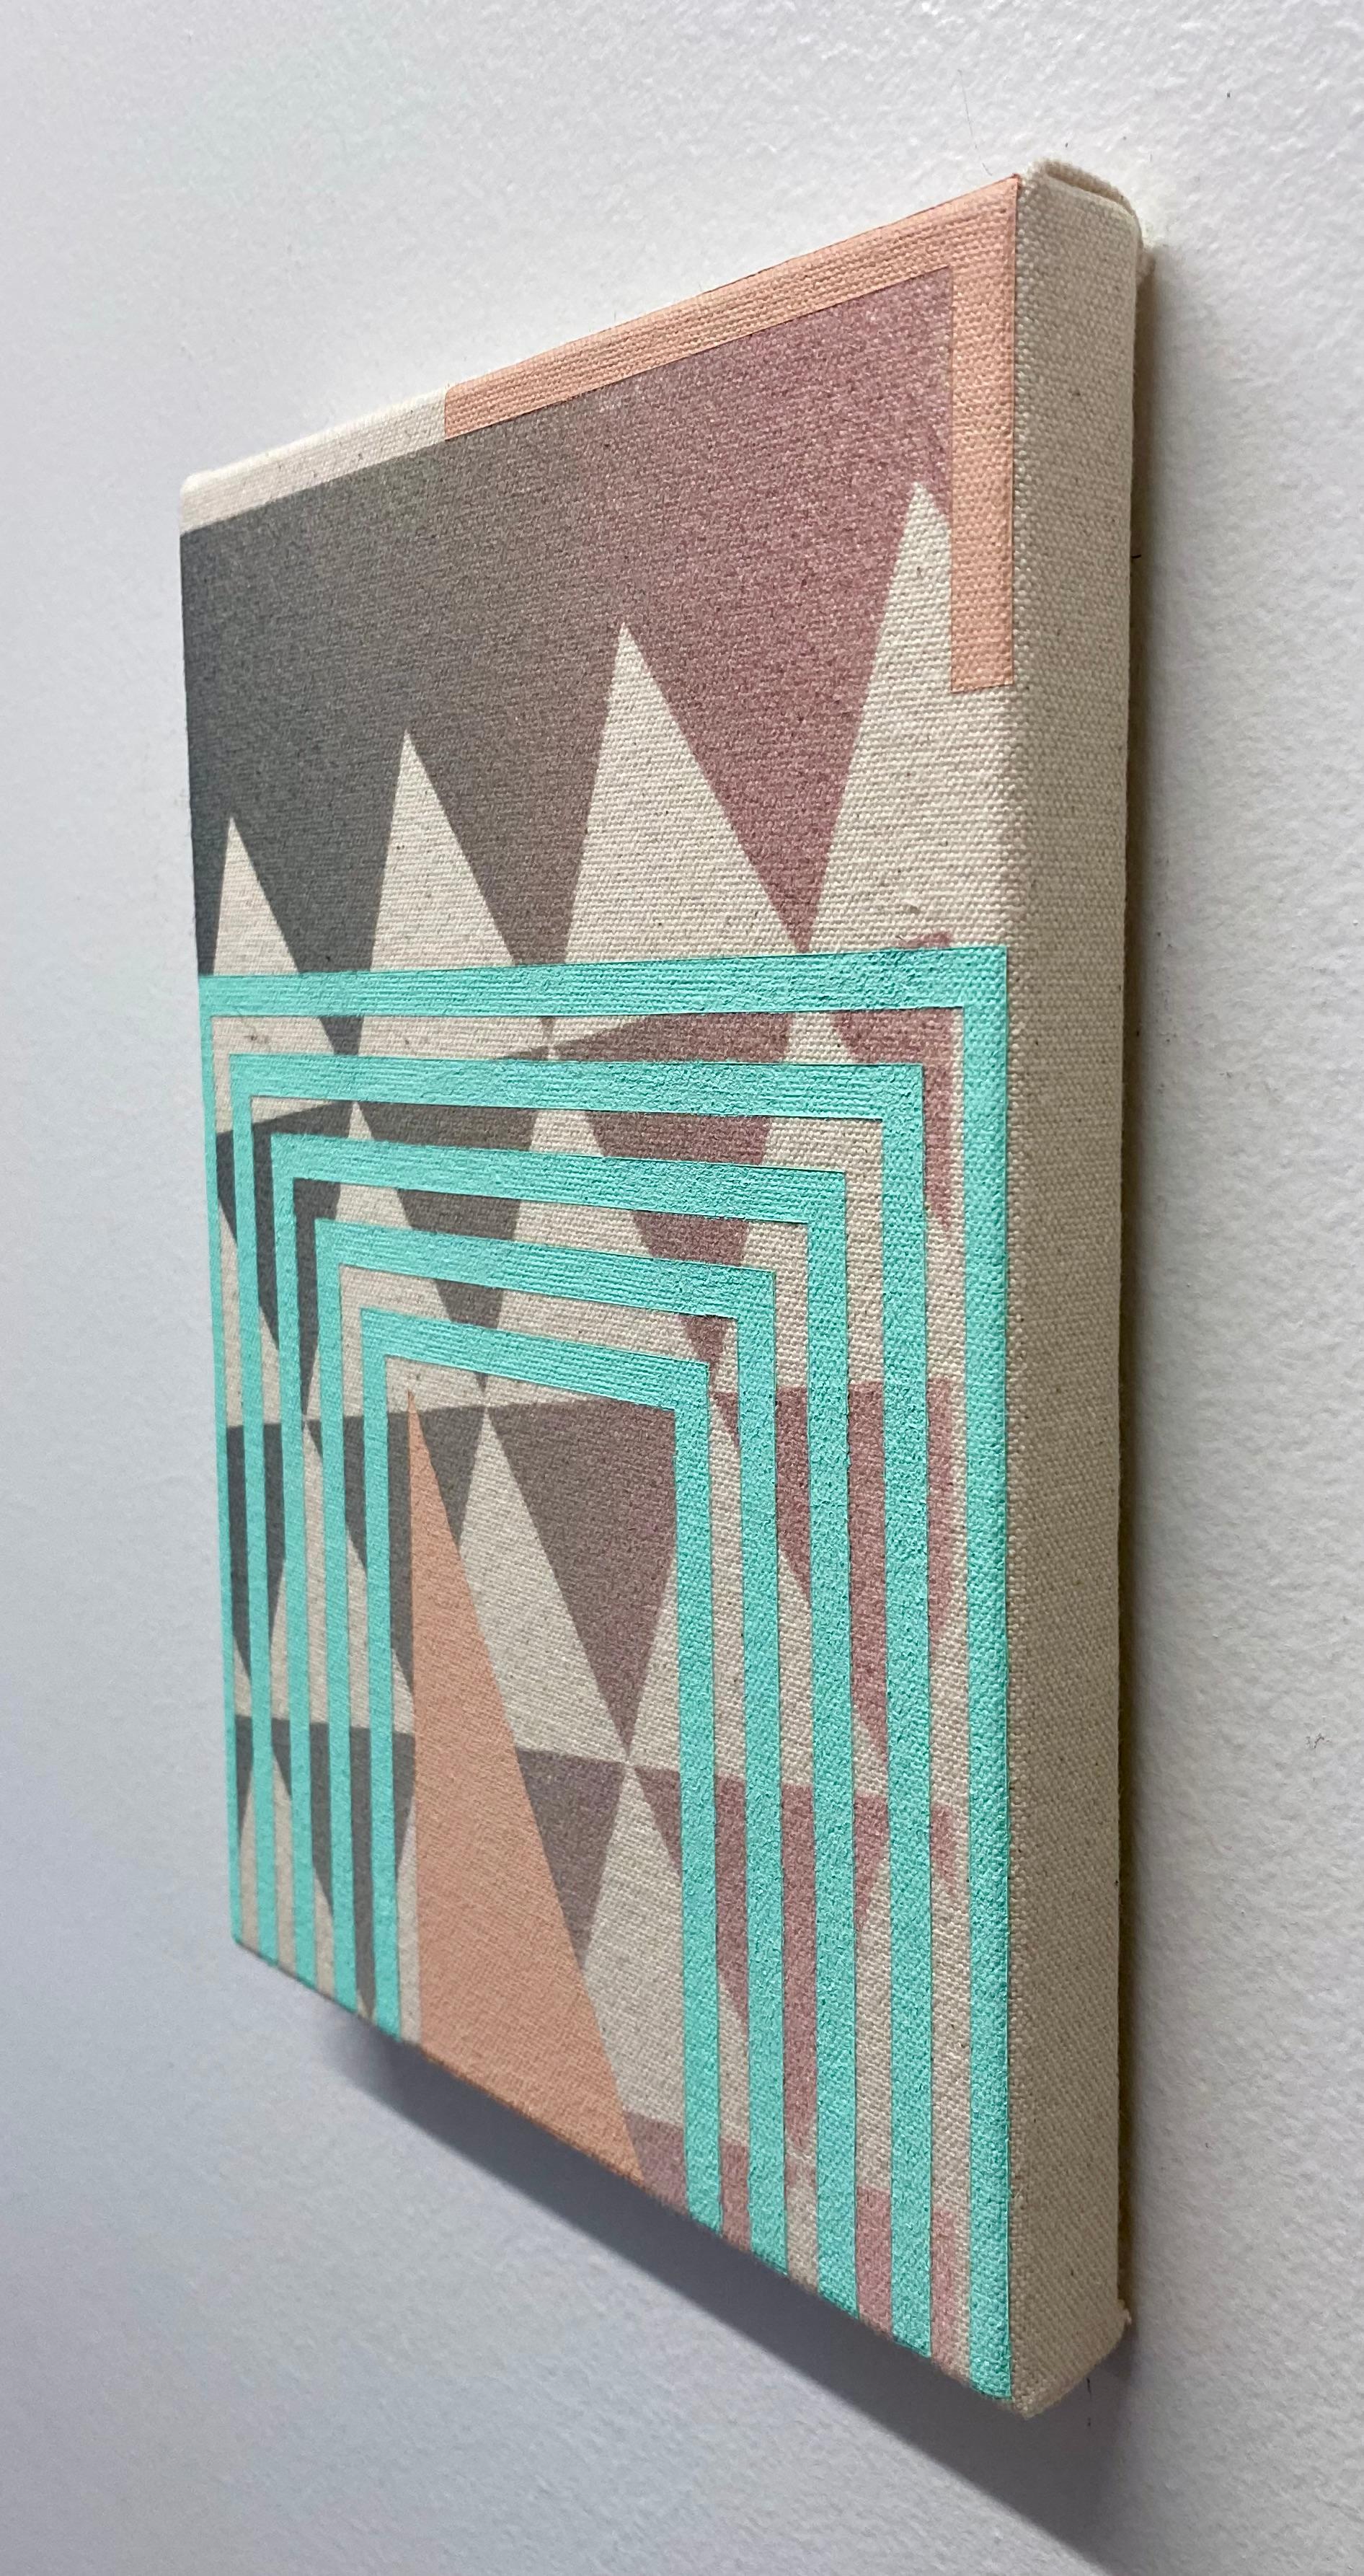 Dieses Gemälde von Alex McClurg zeigt eine Untermalung aus dunkelgrauen gleichseitigen Dreiecken mit hartkantigen hellblauen Linien, die am unteren Bildrand eine mehrschichtige, auf dem Kopf stehende U-Form bilden. Ein helles lachsfarbenes Dreieck